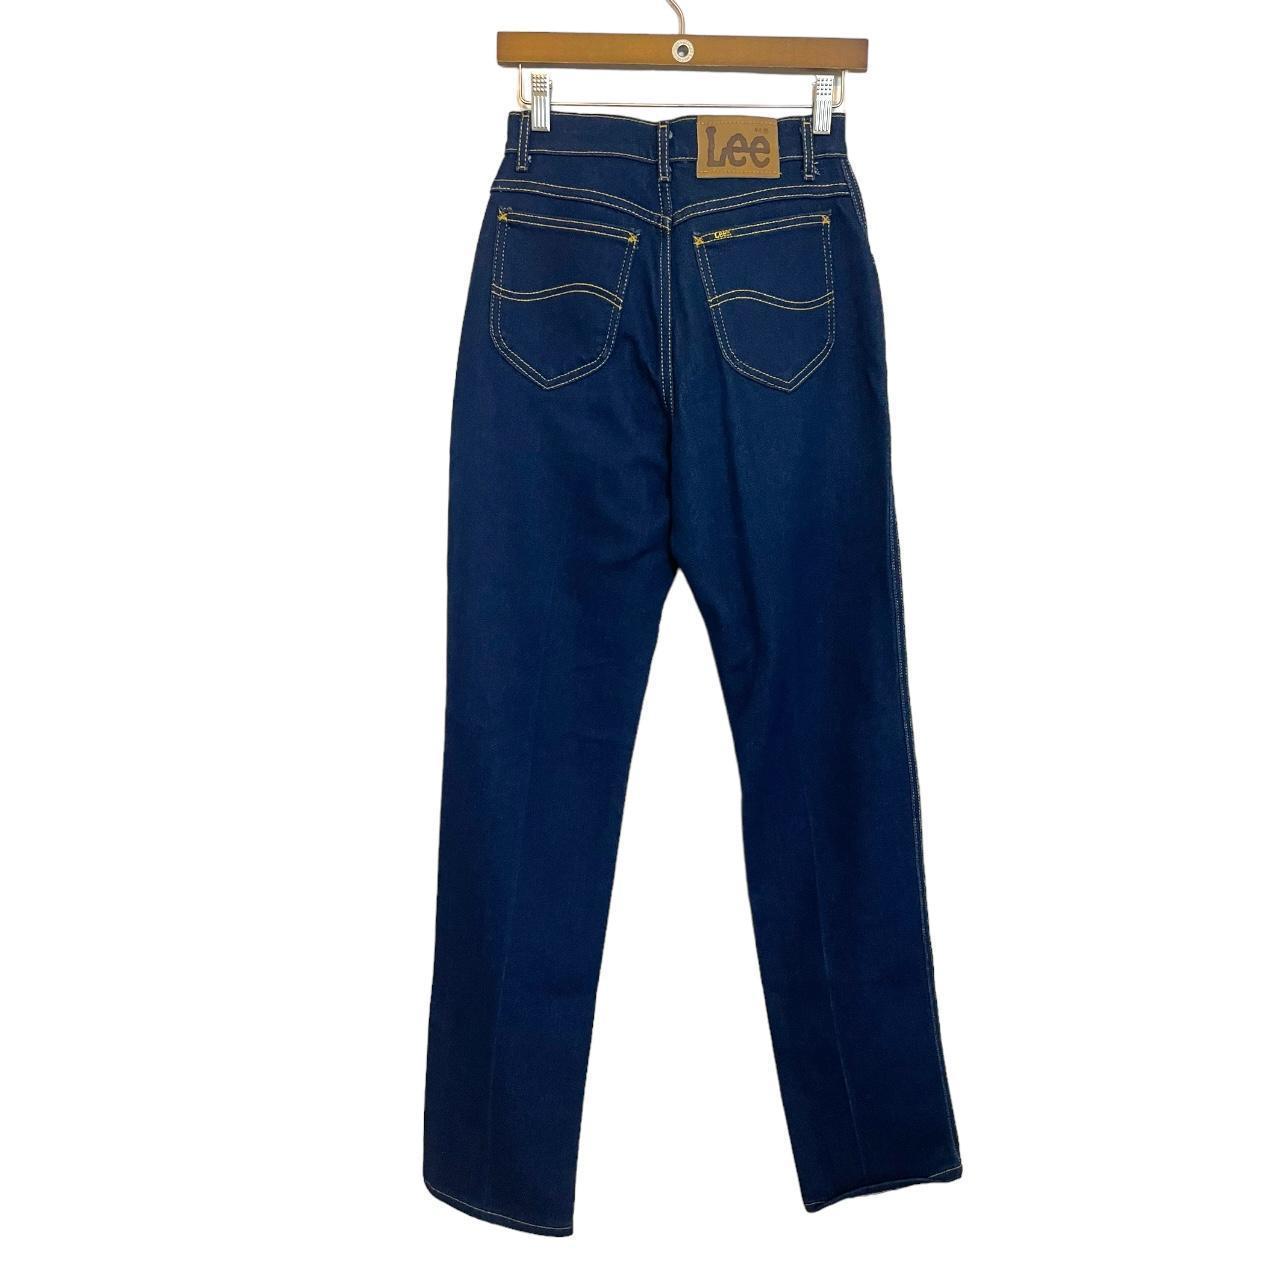 Vintage Lee Jeans Deadstock 80s vintage jeans -... - Depop